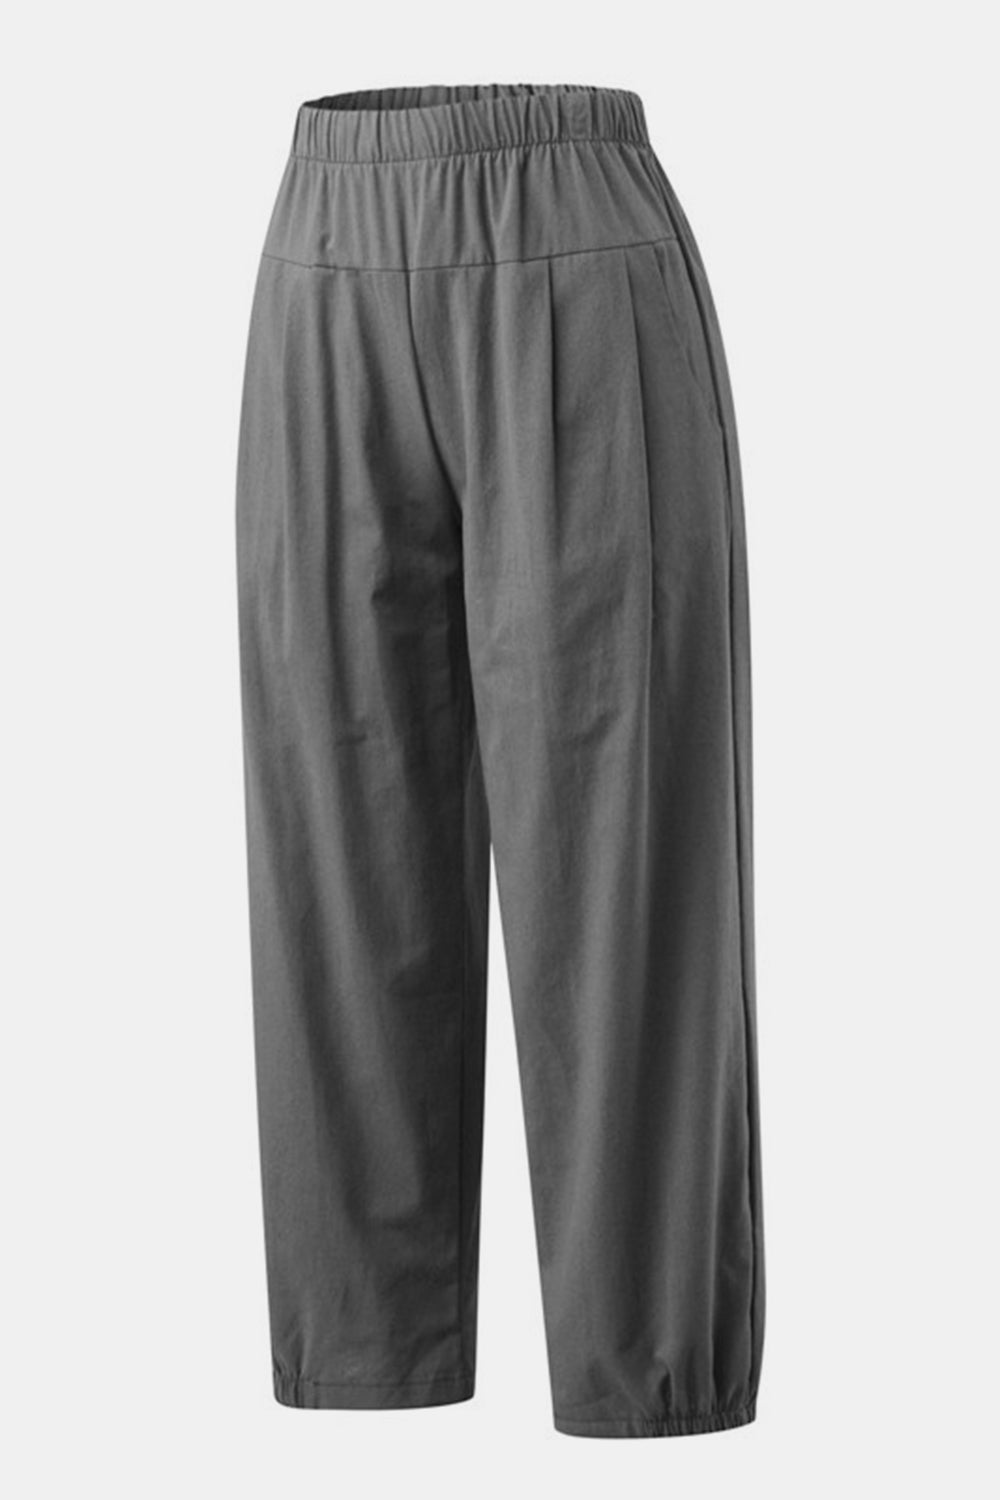 TEEK - Easy Elastic Waist Cropped Pants PANTS TEEK Trend Charcoal S 